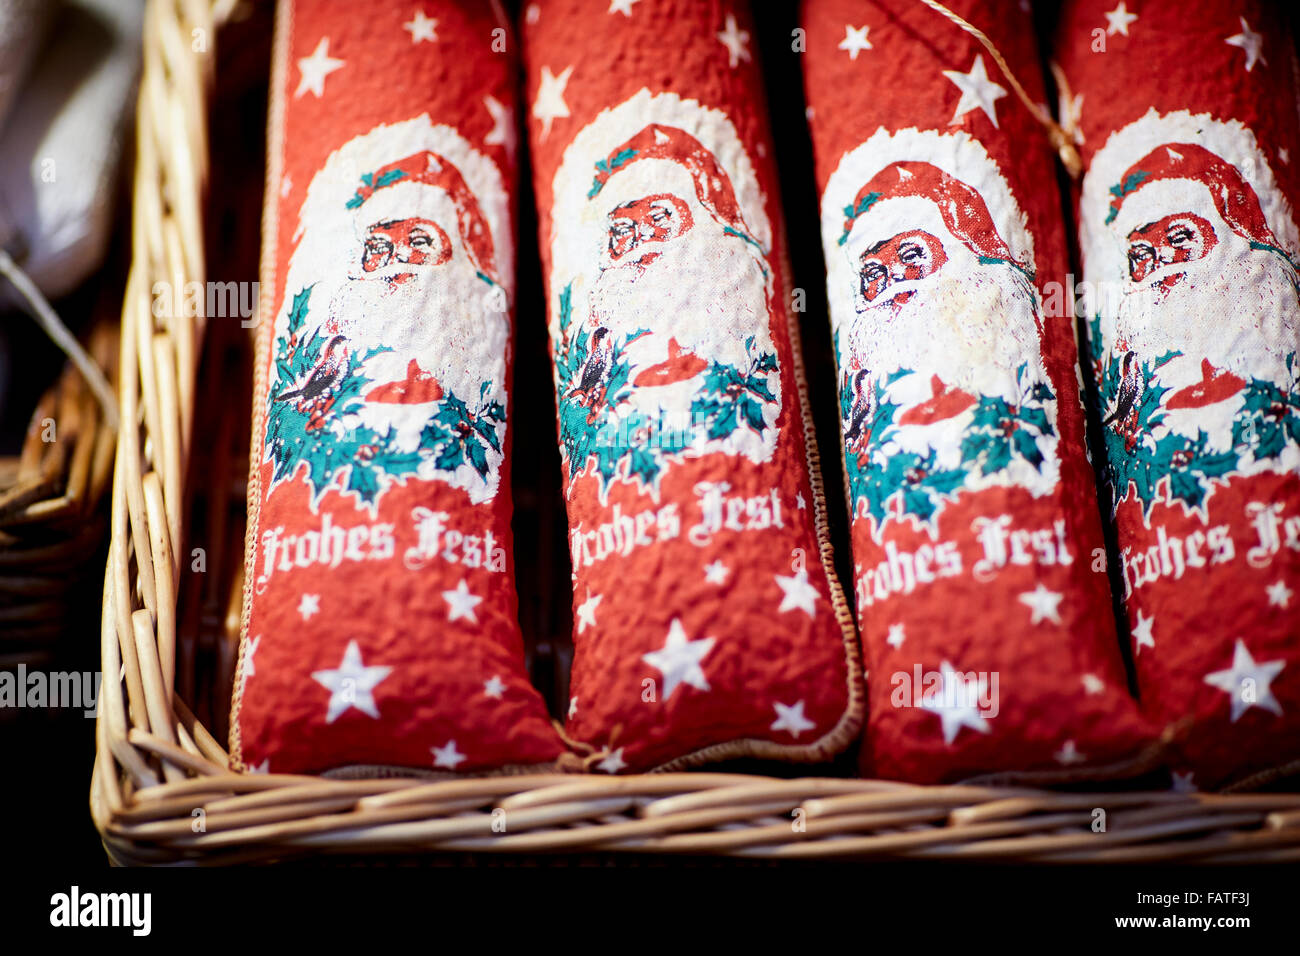 Chester Stadtzentrum deutsche Styke Weihnachtsmarkt Märkte 2015 Basar Hersteller Händler Händler unabhängigen Läden Käufer Verkäufer s Stockfoto